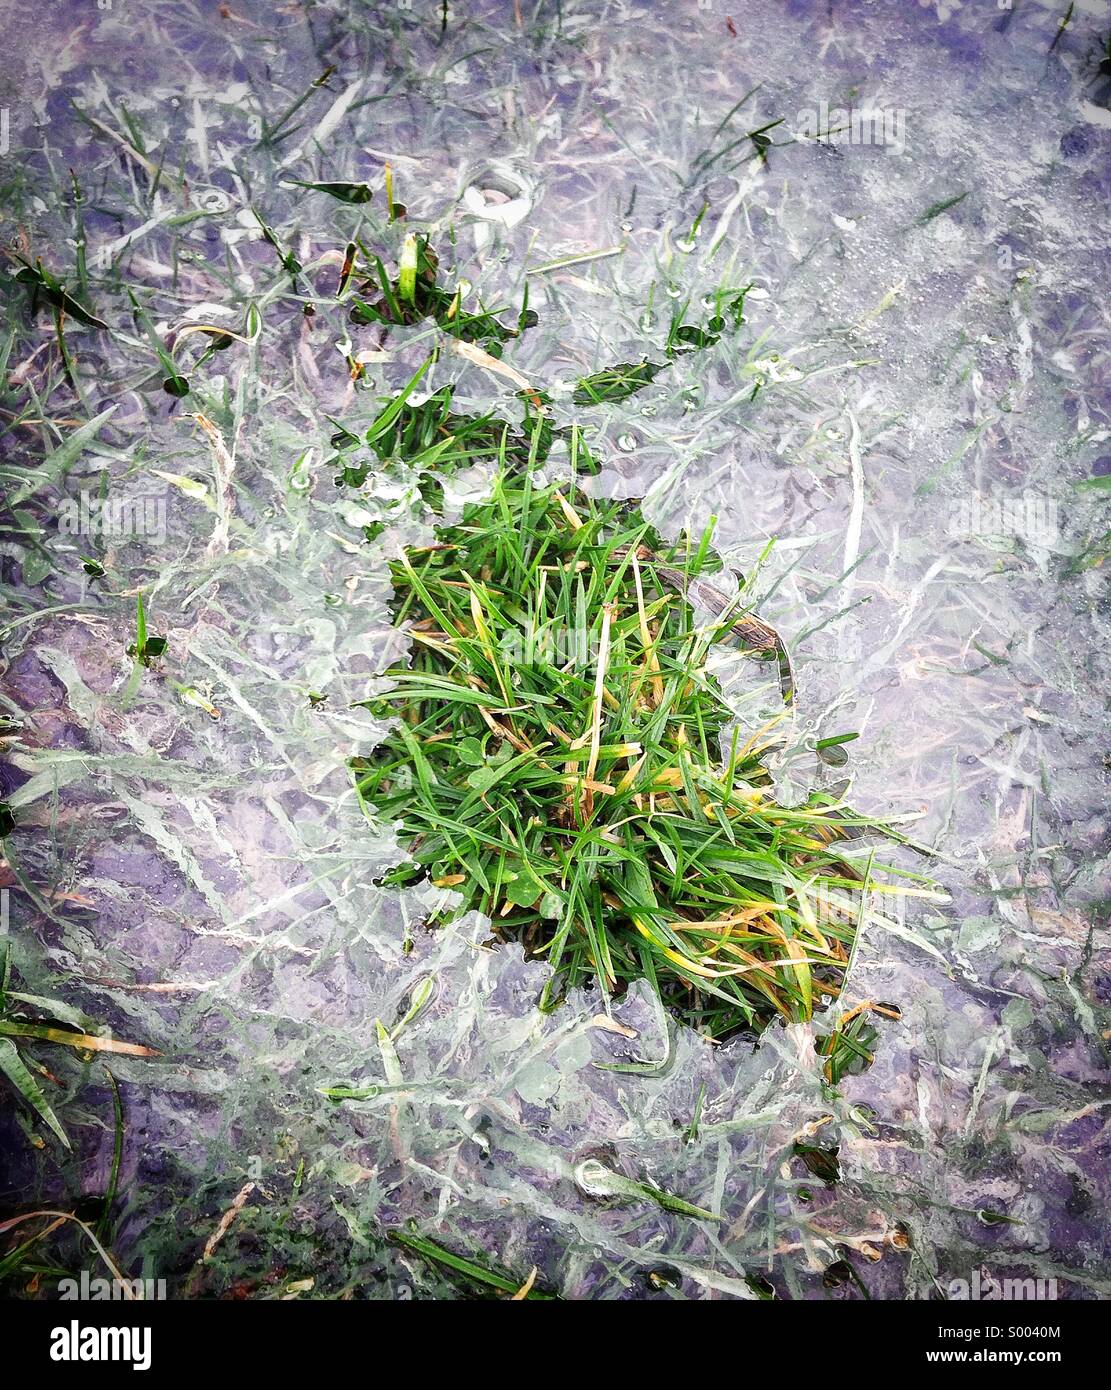 Ice surrounding tuft of grass Stock Photo